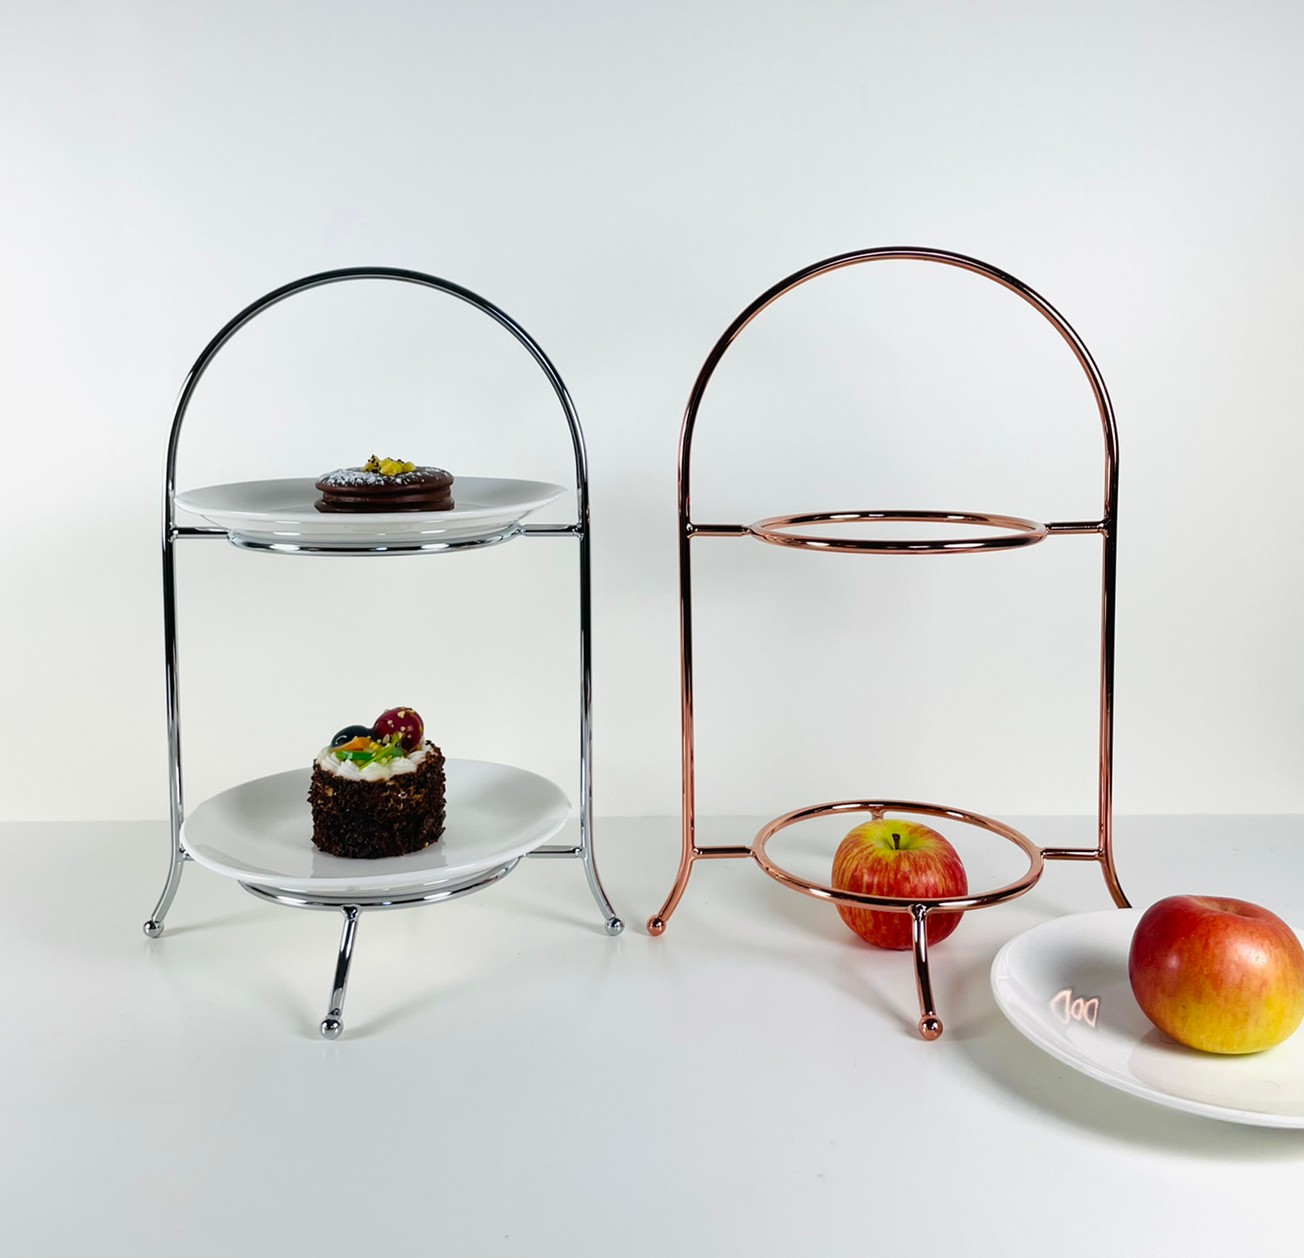 迷你型二層特色風格下午茶盤架可搭7吋圓盤/蛋糕架/點心架/下午茶架/咖啡廳愛用(玫瑰金) | 第一張展示圖